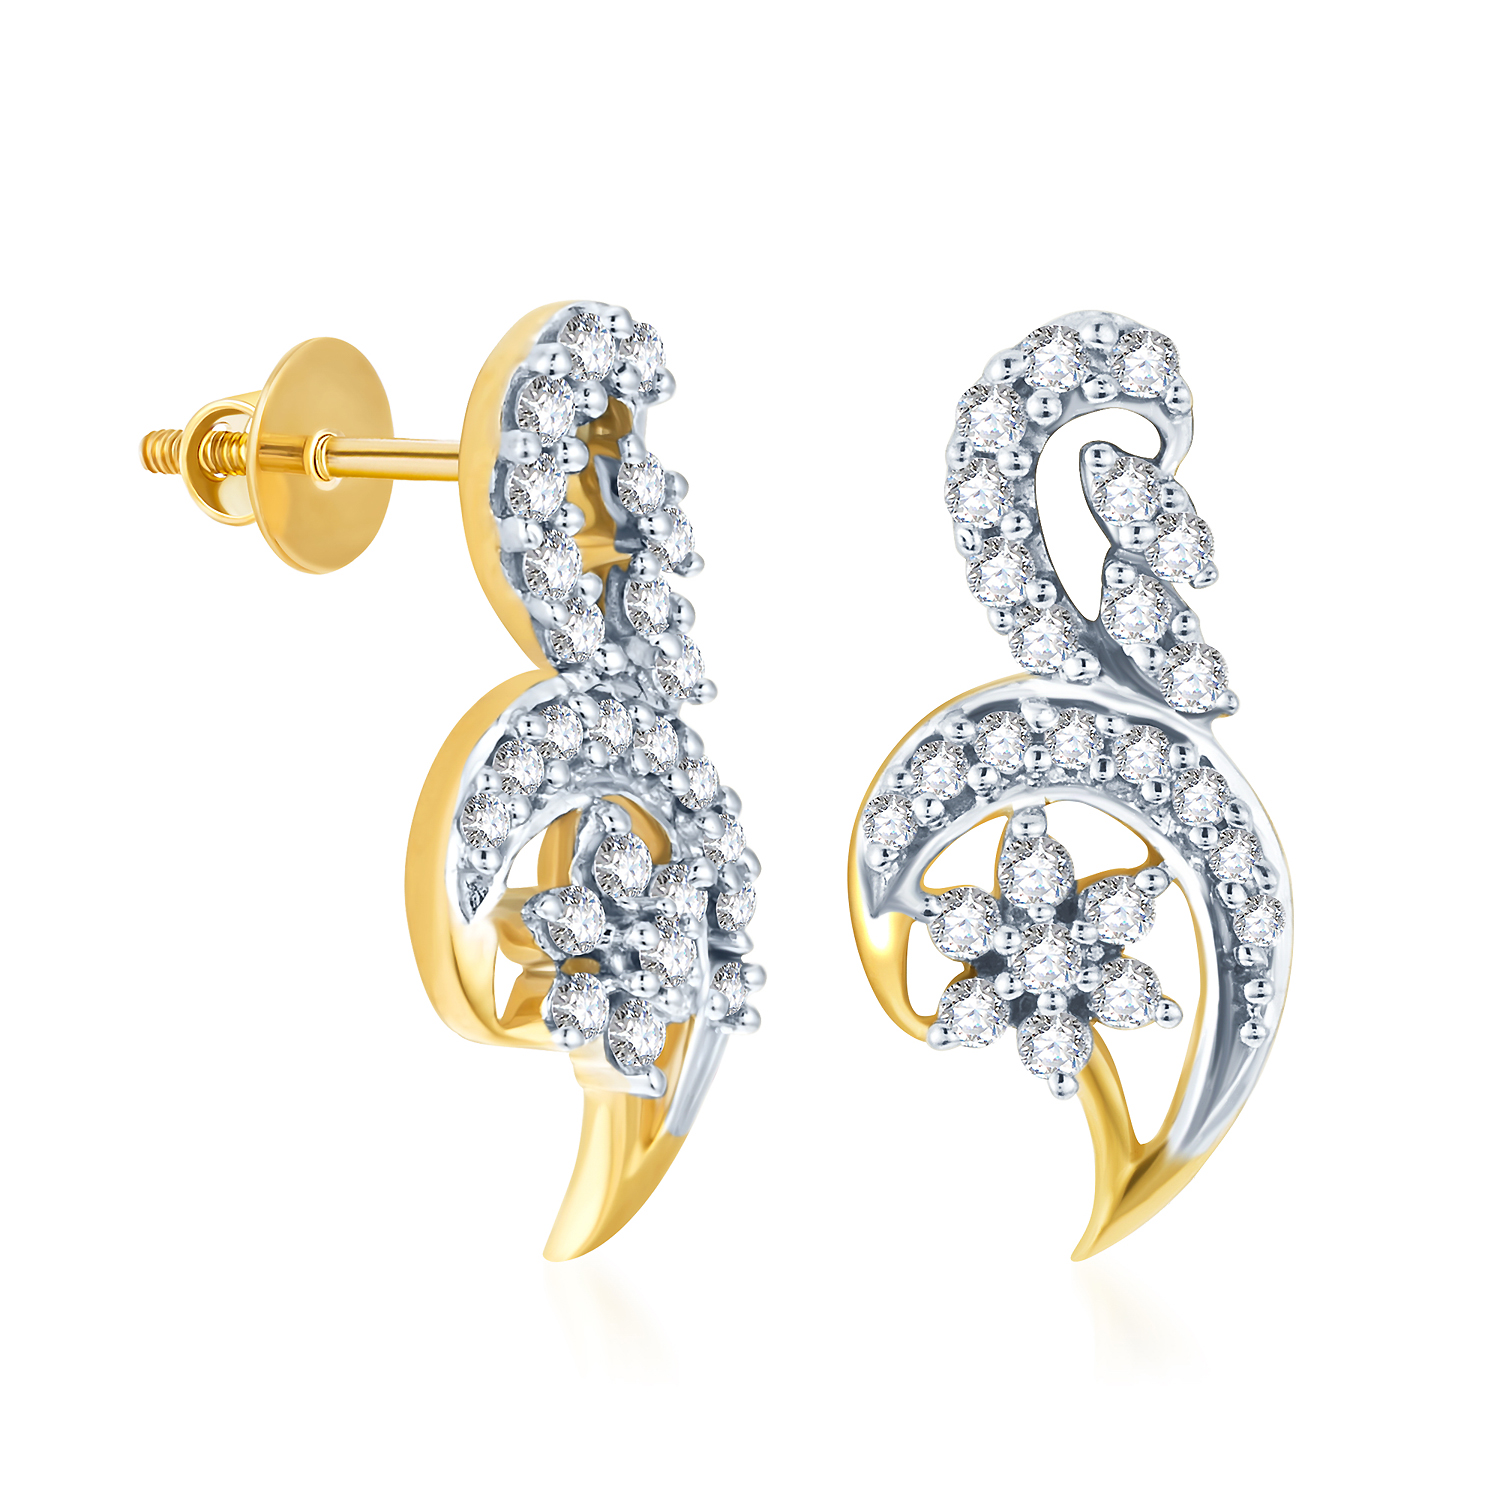 Share more than 194 girlish gold earrings design best